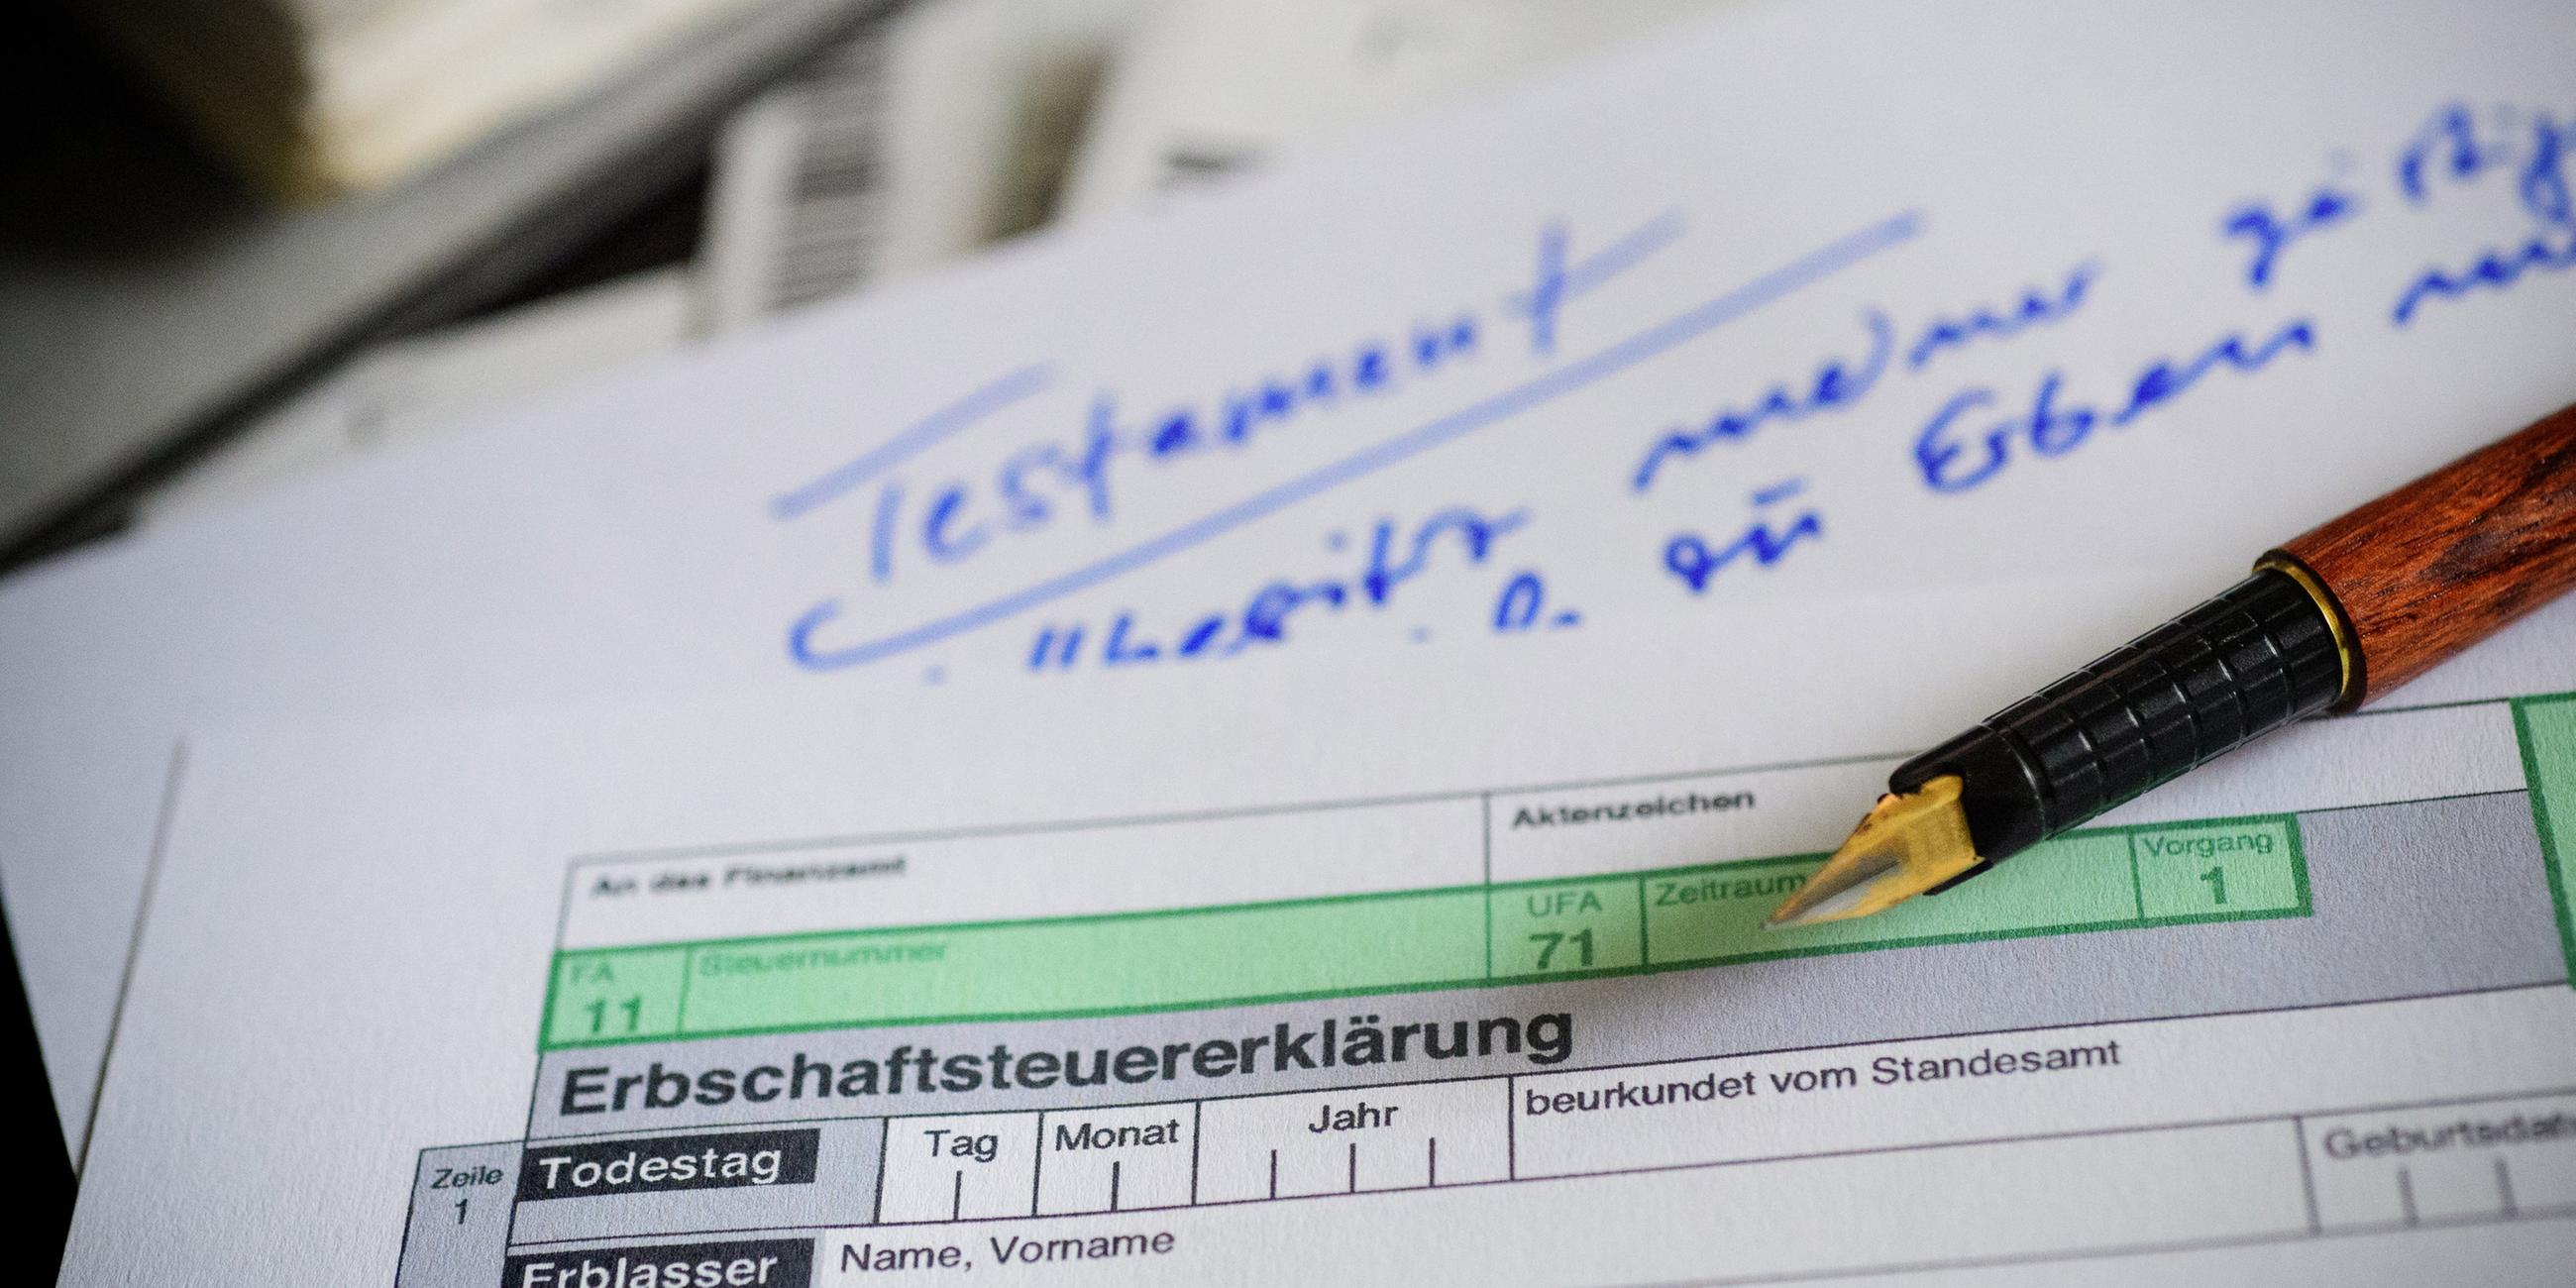 Ein Formular zur Erbschaftssteuer liegt über einem Papier mit der Aufschrift "Testament".